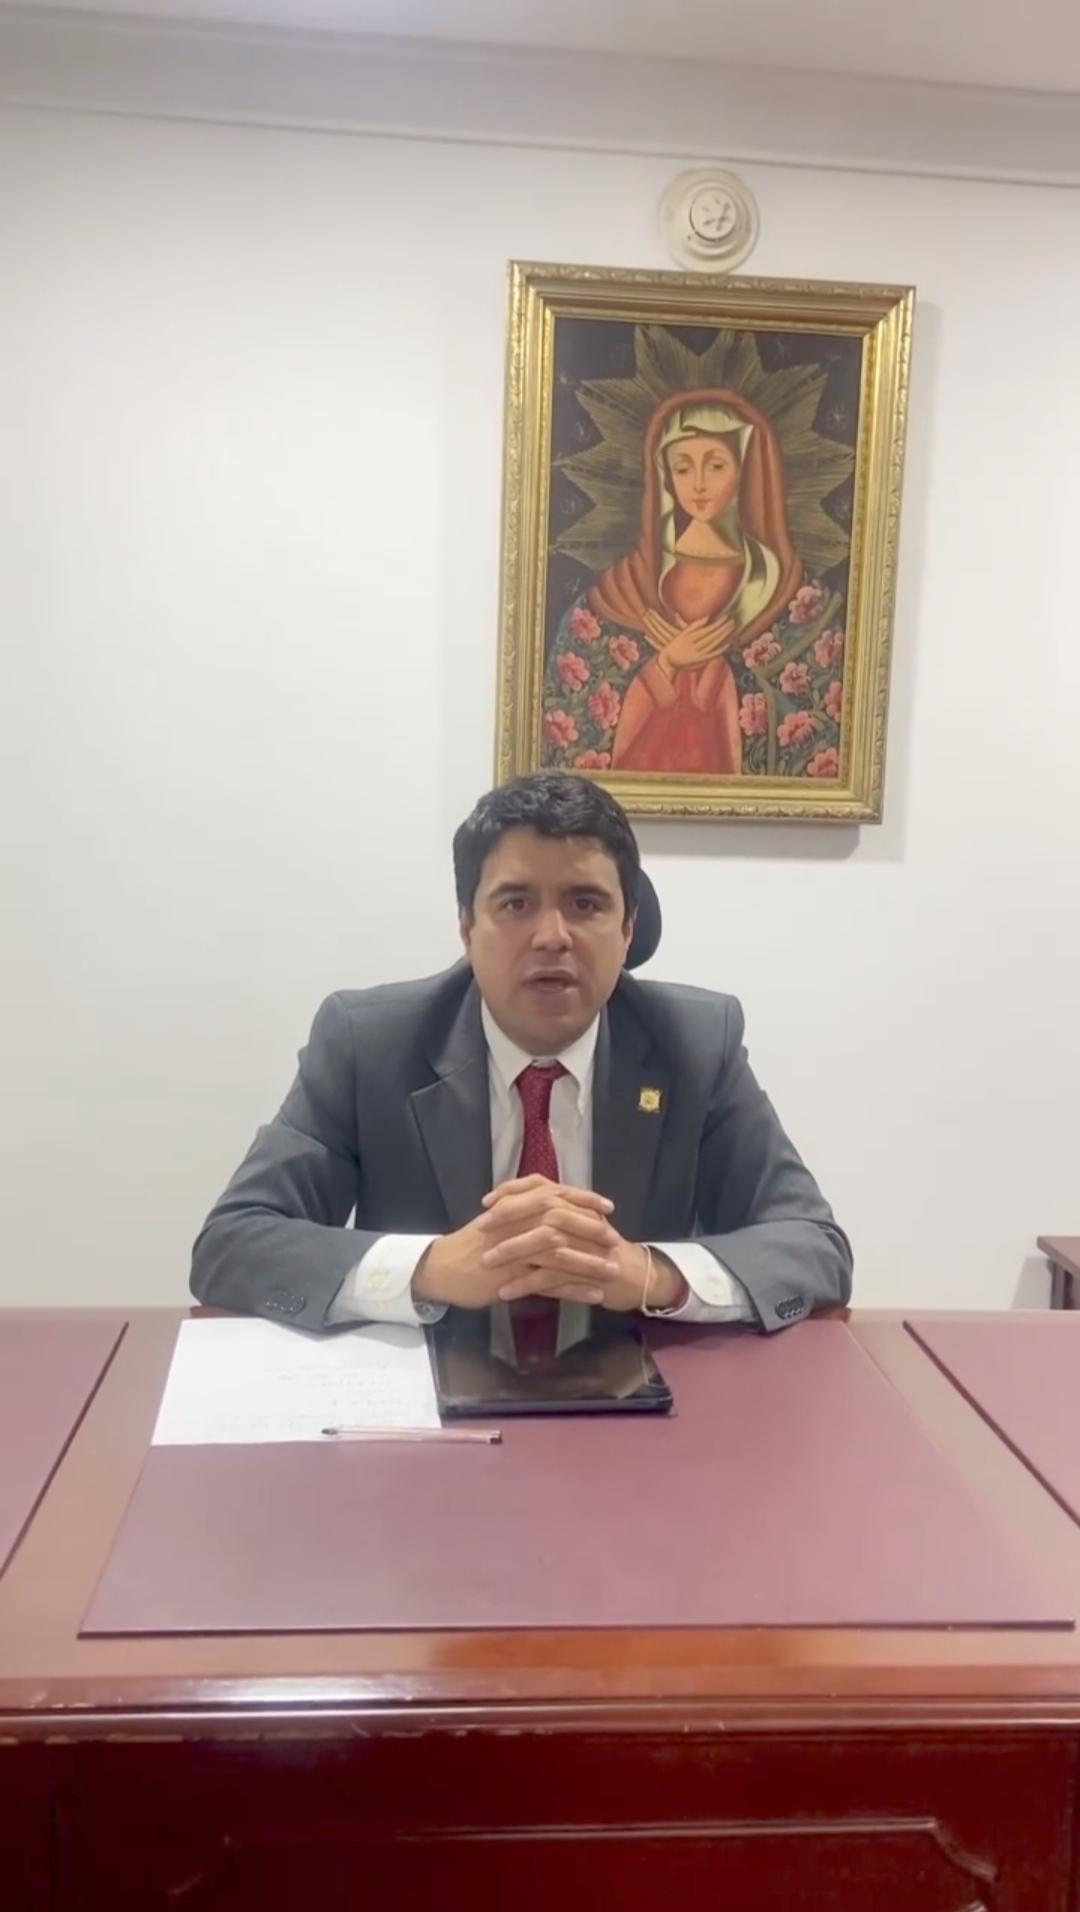 Representante a La Cámara Carlos Felipe Quintero Ovalle, se pronunció en contra del artículo 69 del Proyecto de Reforma Tributaria